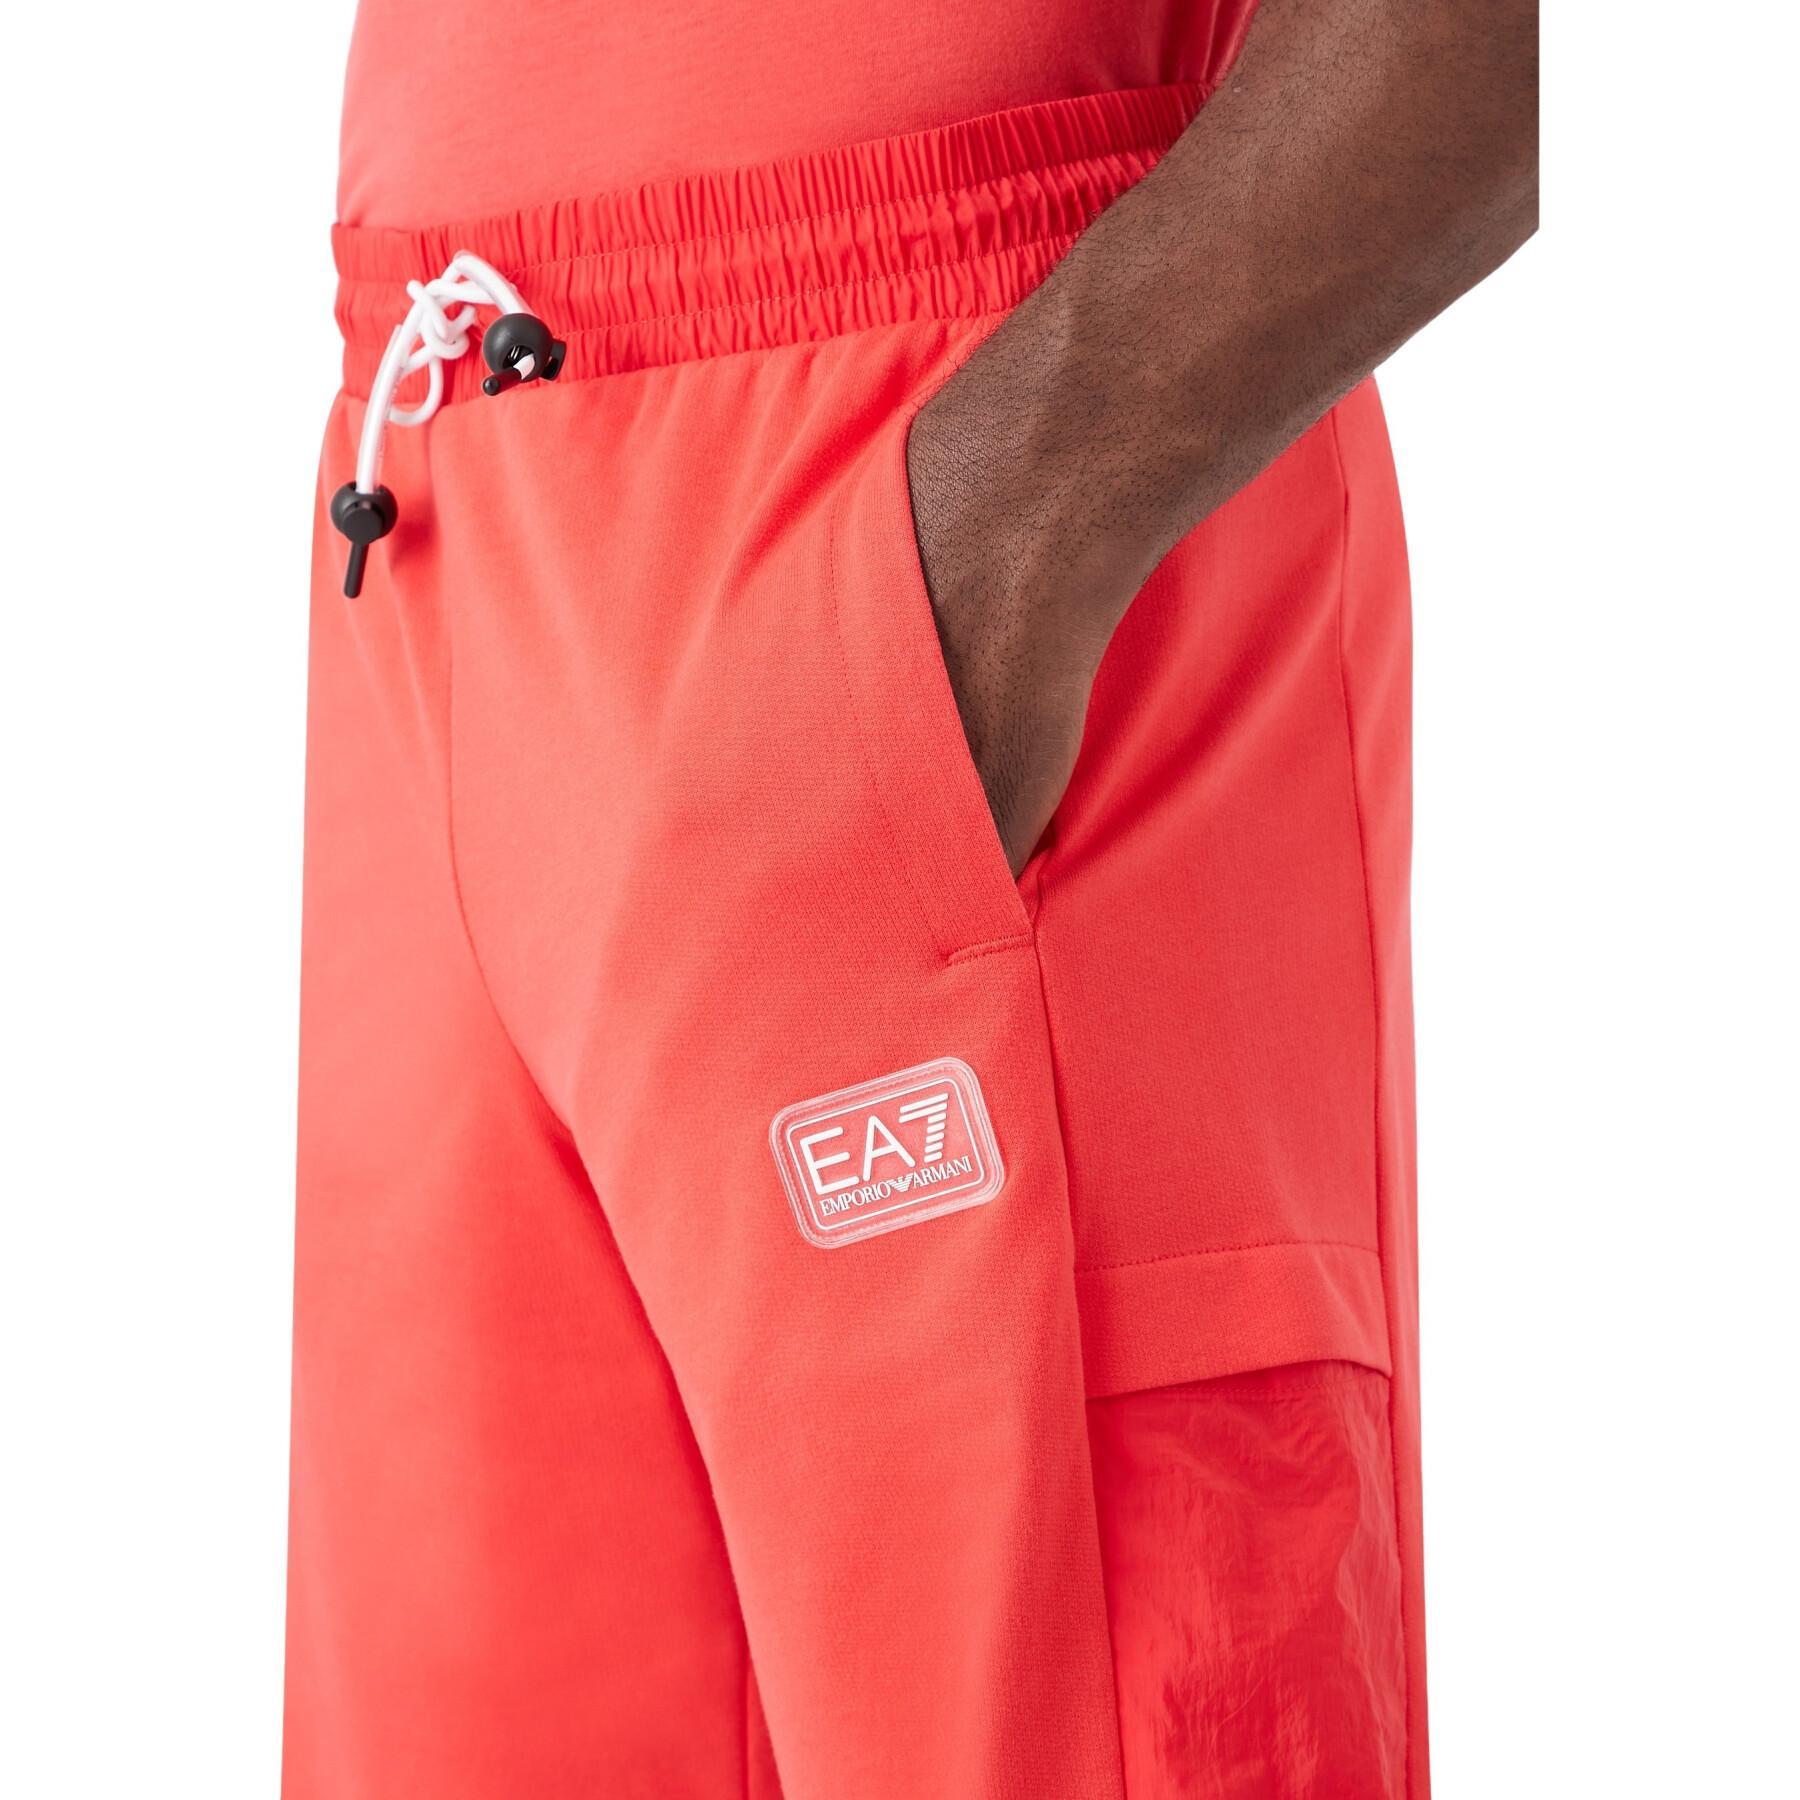 Bermuda shorts EA7 Emporio Armani SD